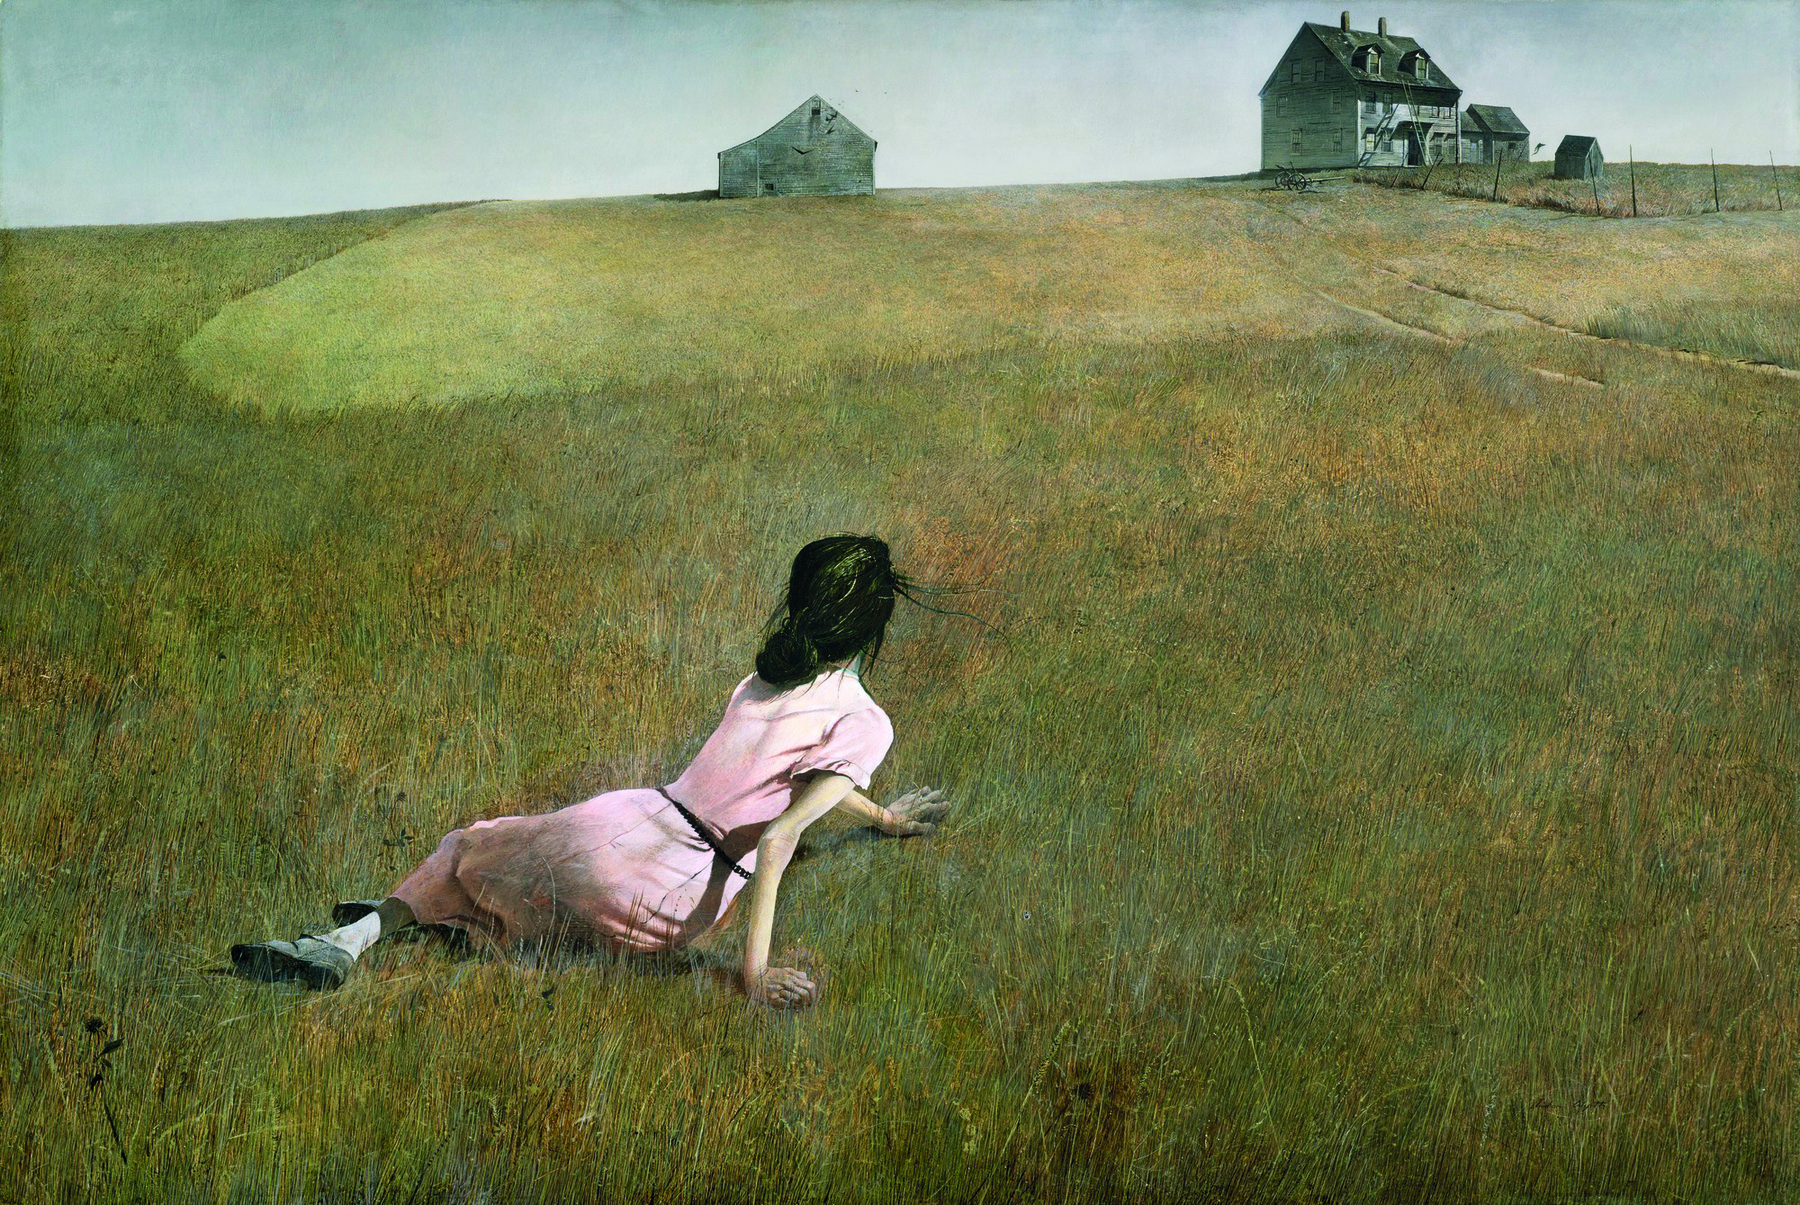 Pintura. Uma mulher de cabelo preto penteado para trás, usando um vestido rosa, está deitada em um campo de grama, apoiando-se sobre as mãos. Ela está olhando para o fundo, onde há um campo extenso e três casas.